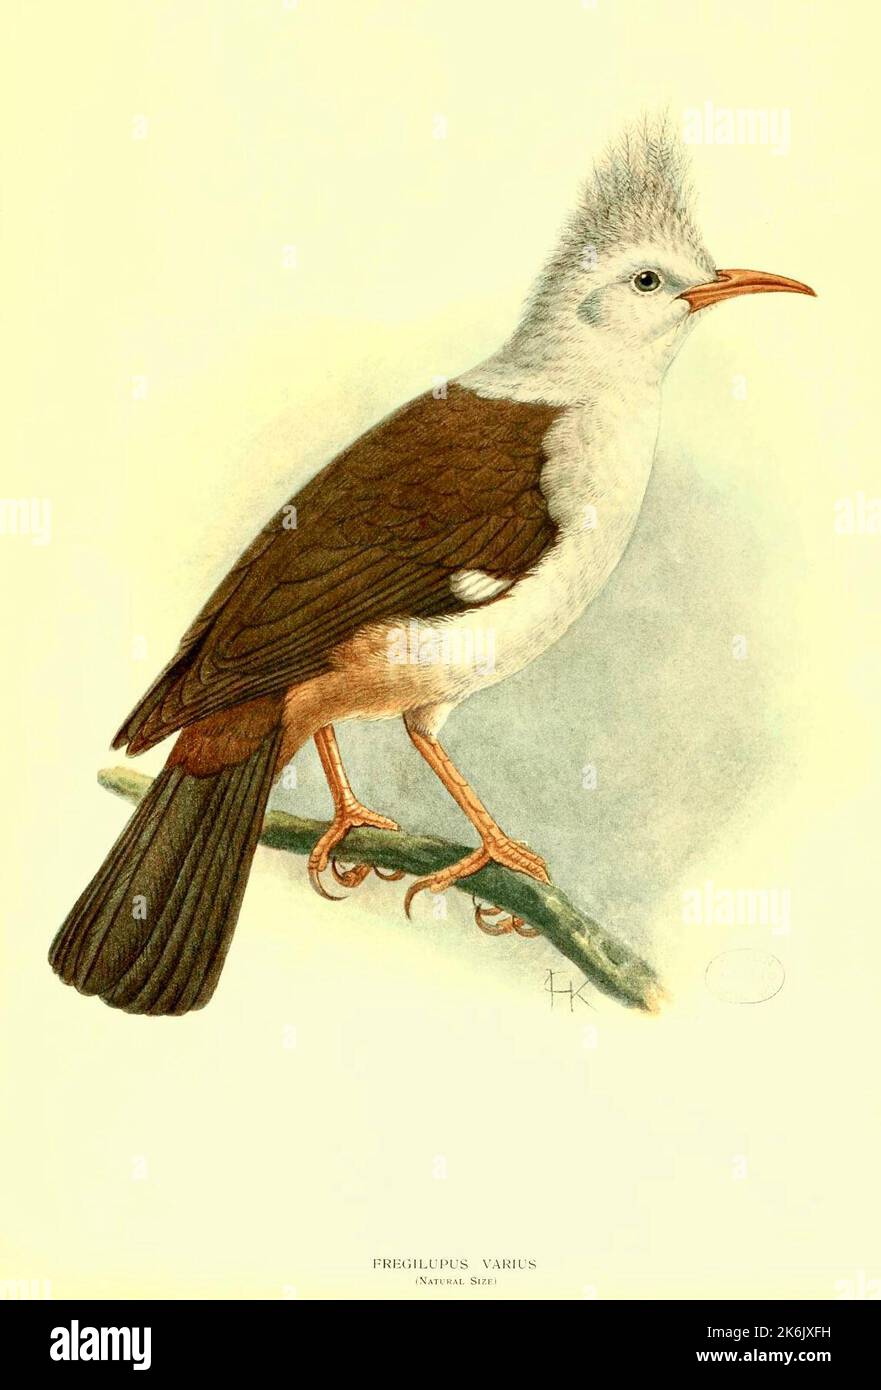 Der Hoopoe Starling - Hoopoe Starling (Fregilupus varius), auch bekannt als der Reunion Star oder Bourbon Crested Star, ist eine Art von Starling, der auf der Mascarene Insel von Reunion lebte und im Jahr 1850s ausgestorben wurde. Stockfoto